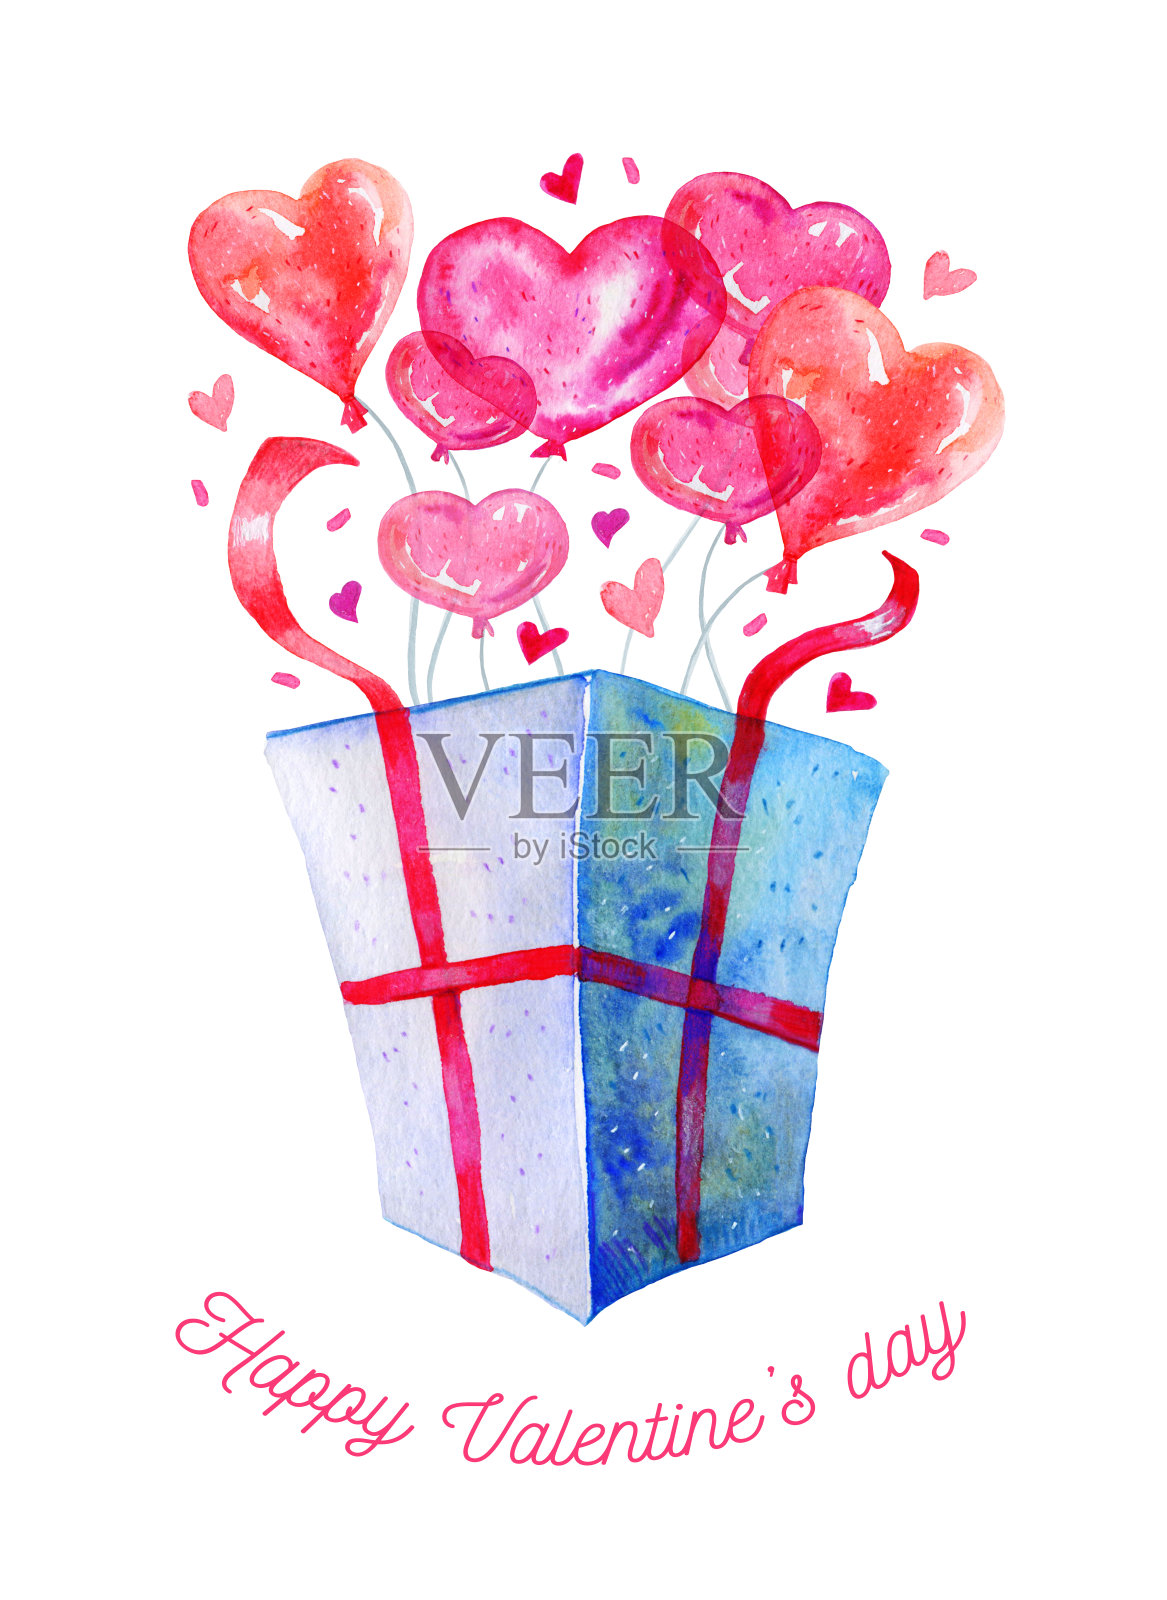 打开带有心形气球的礼盒，心形会飞出来。标题“情人节快乐”。为情人节手绘水彩插图插画图片素材